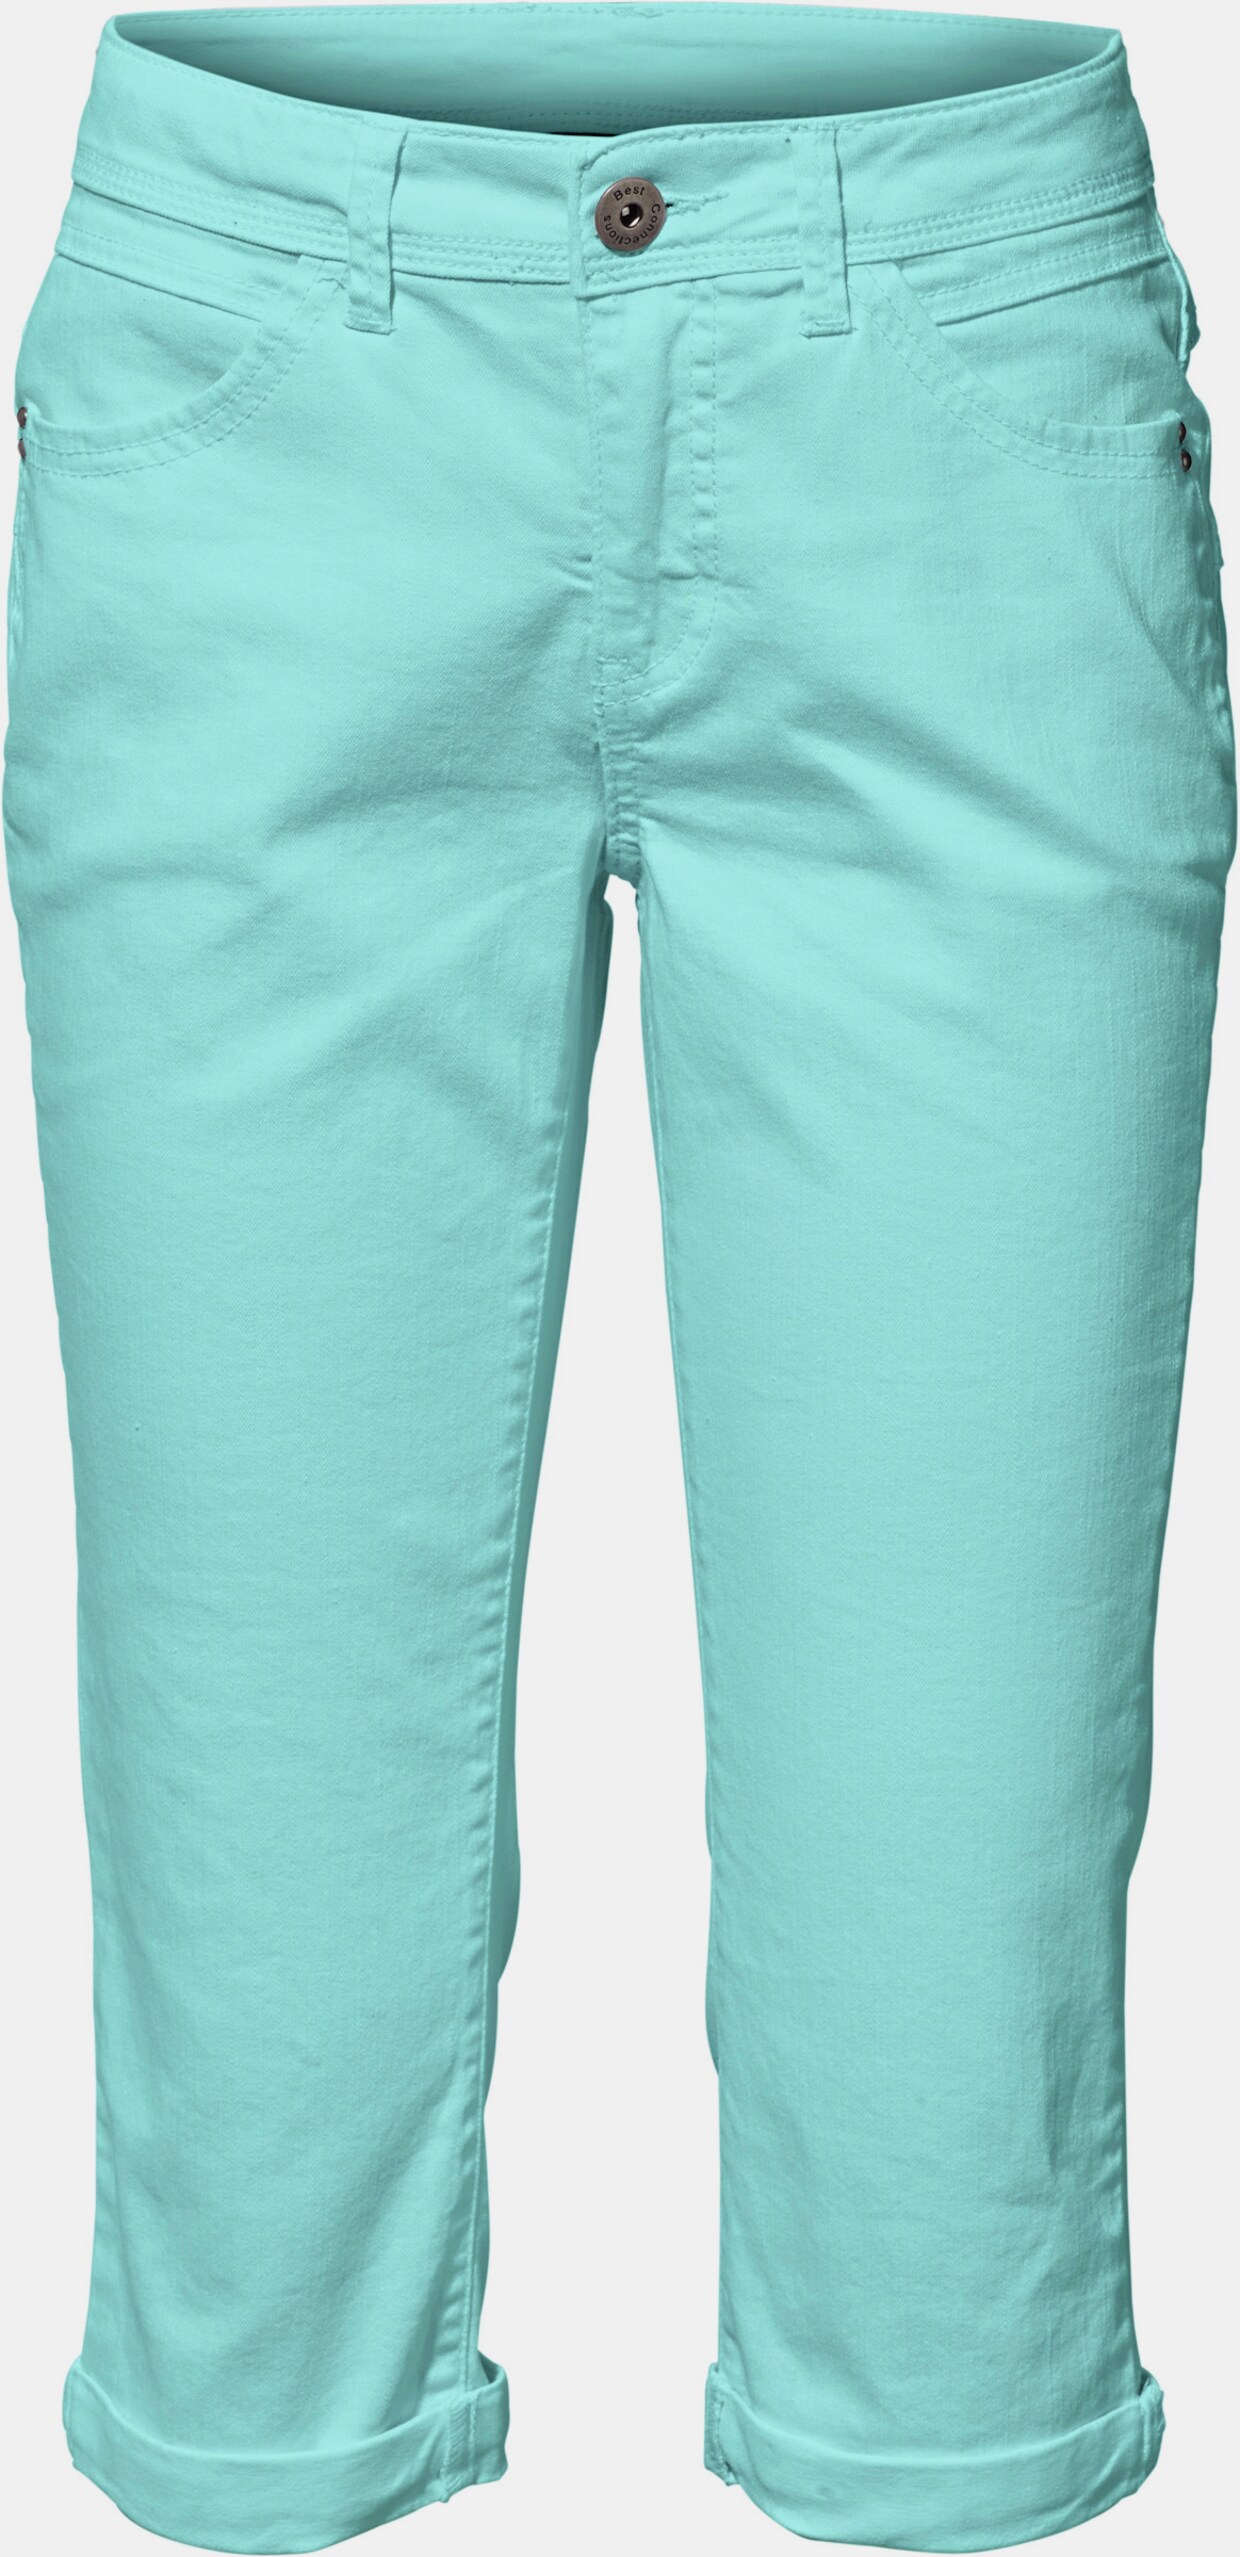 heine pantalon effet ventre plat - turquoise